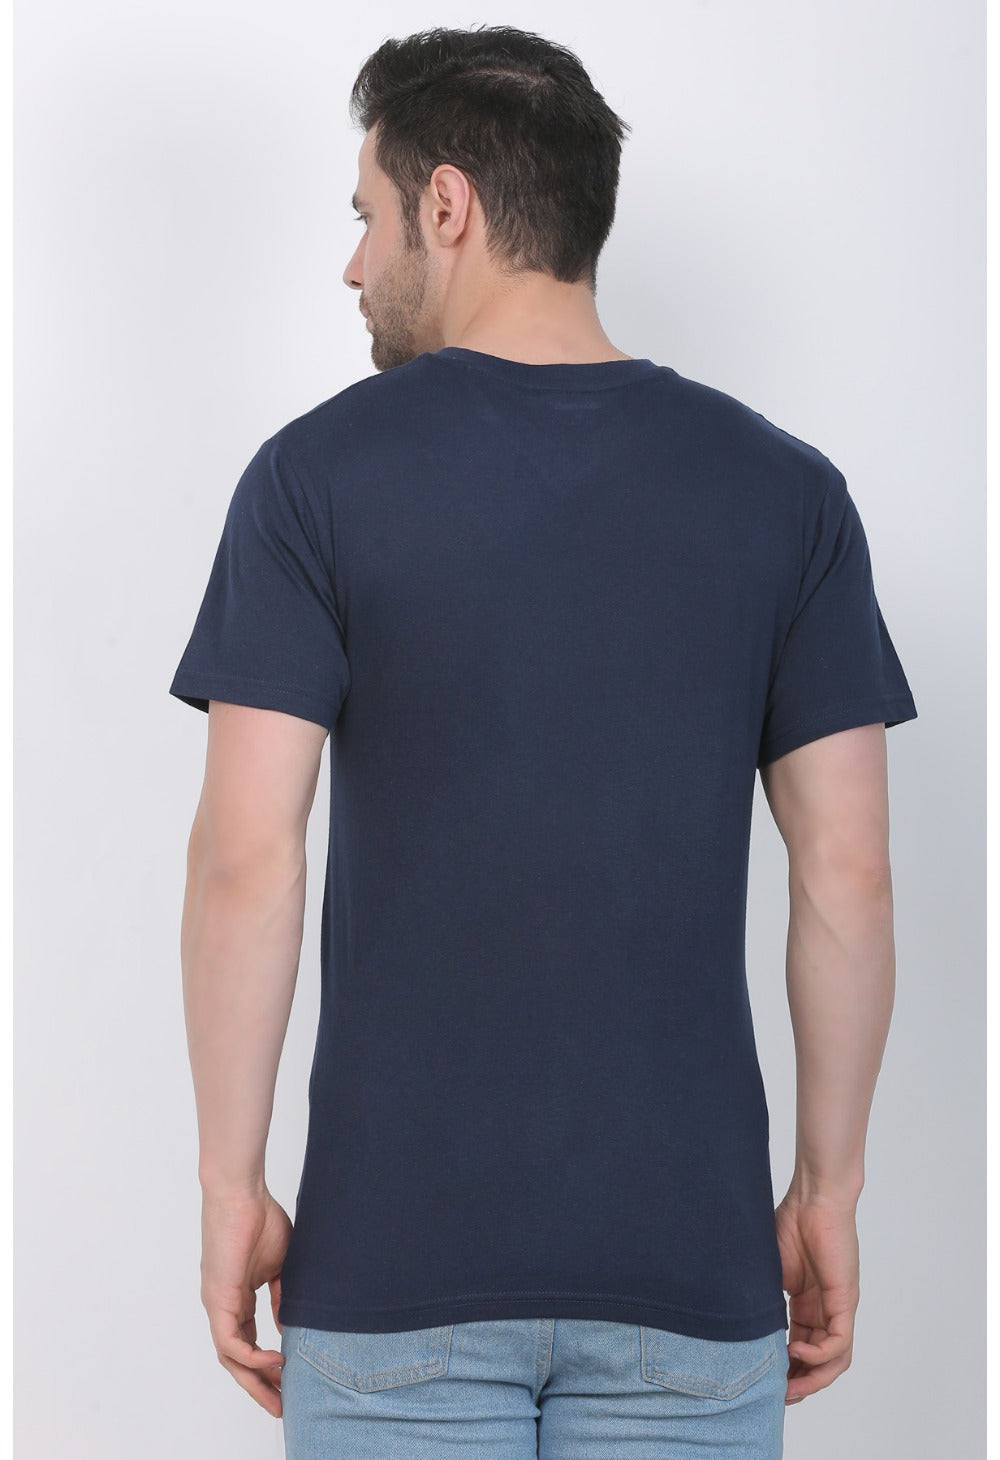 Men's Cotton Jersey Round Neck Printed Tshirt (Navy) - GillKart